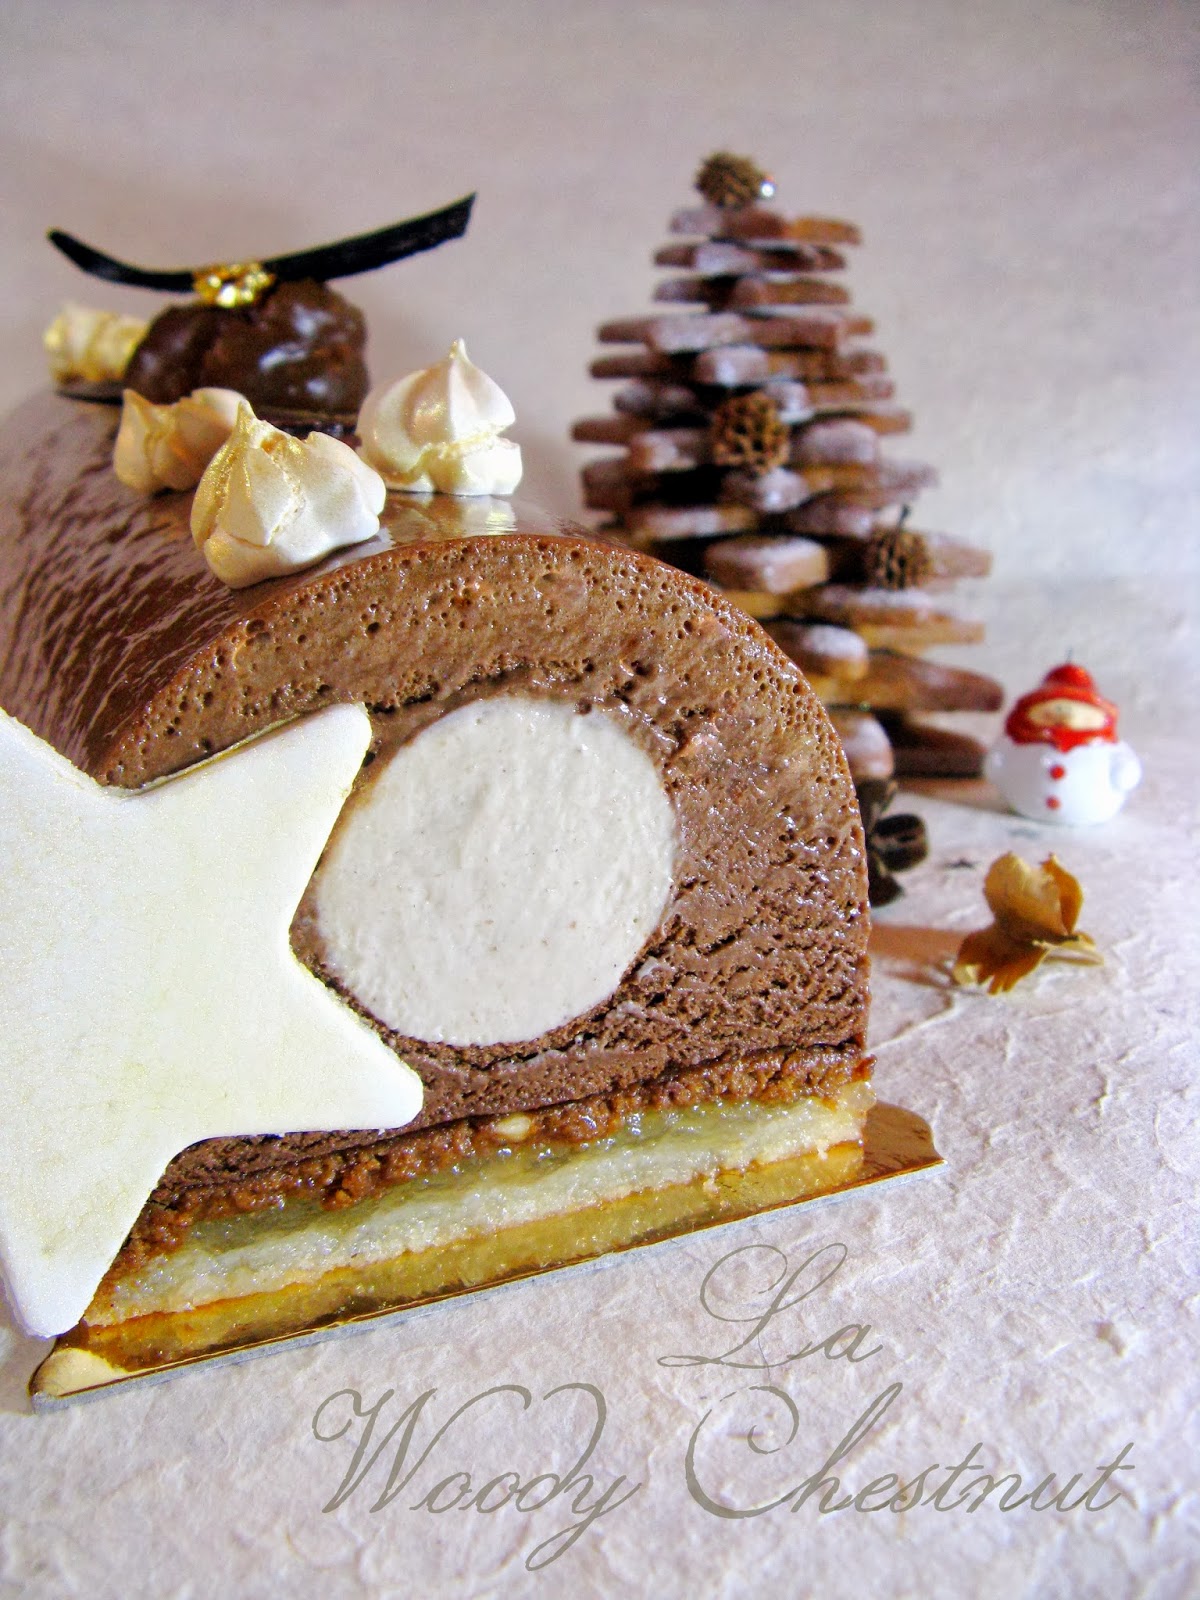 Bûche de Noël Woody - La recette avec photos - Meilleur du Chef